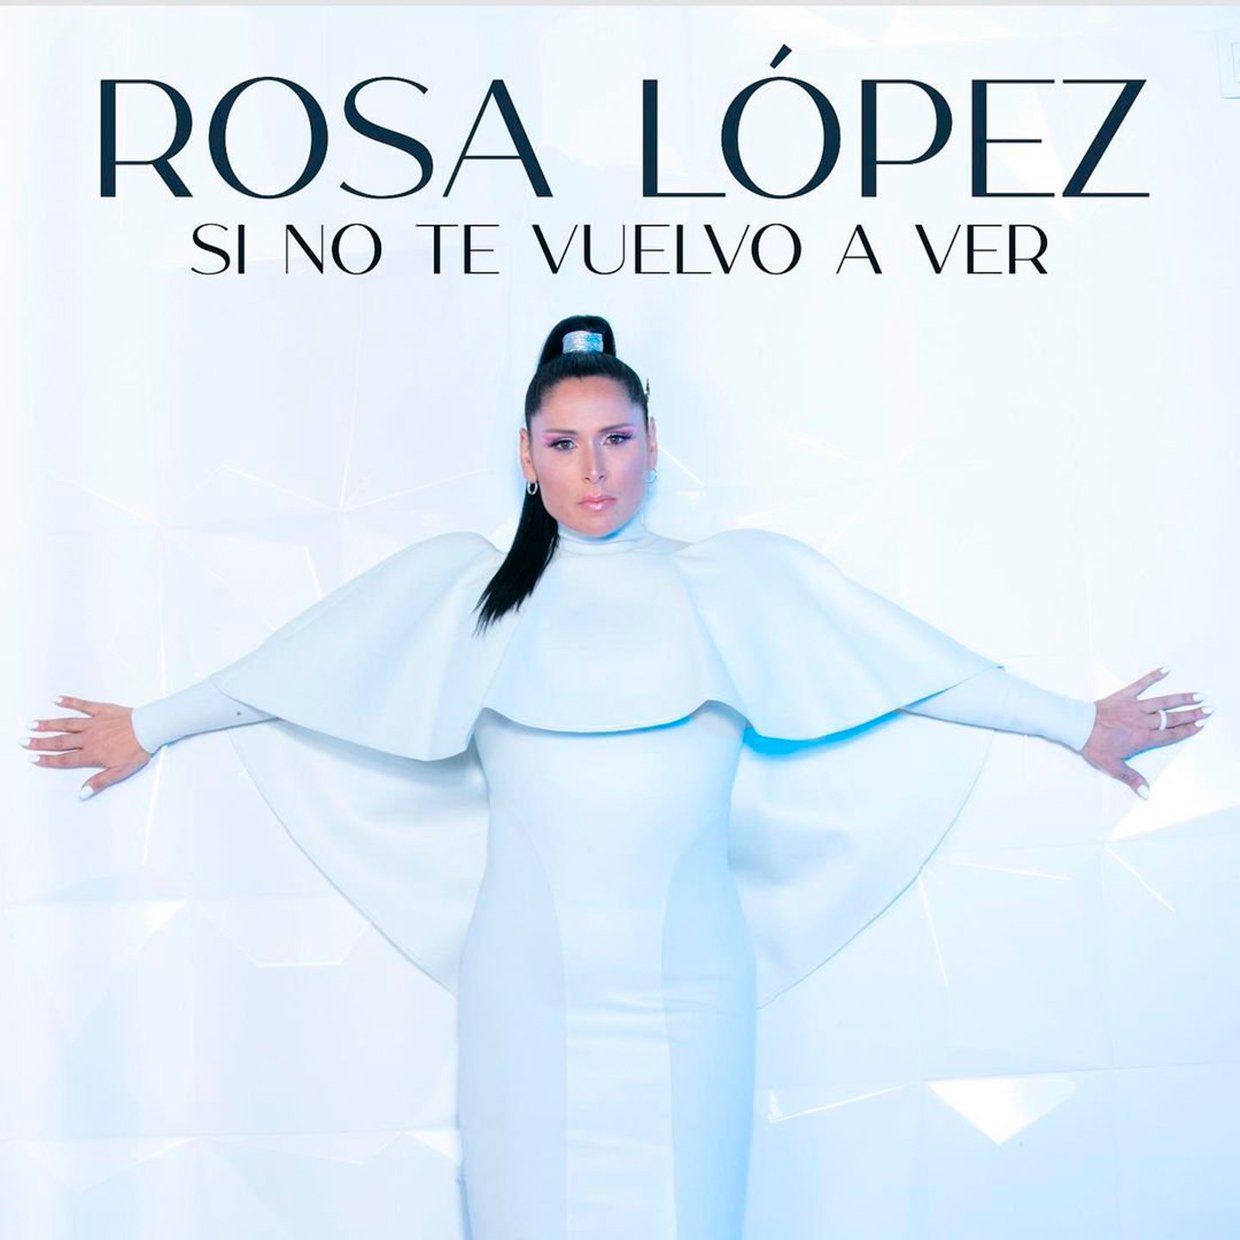 Arriba, carátula del último "single" de Rosa López, Si no te vuelvo a ver.